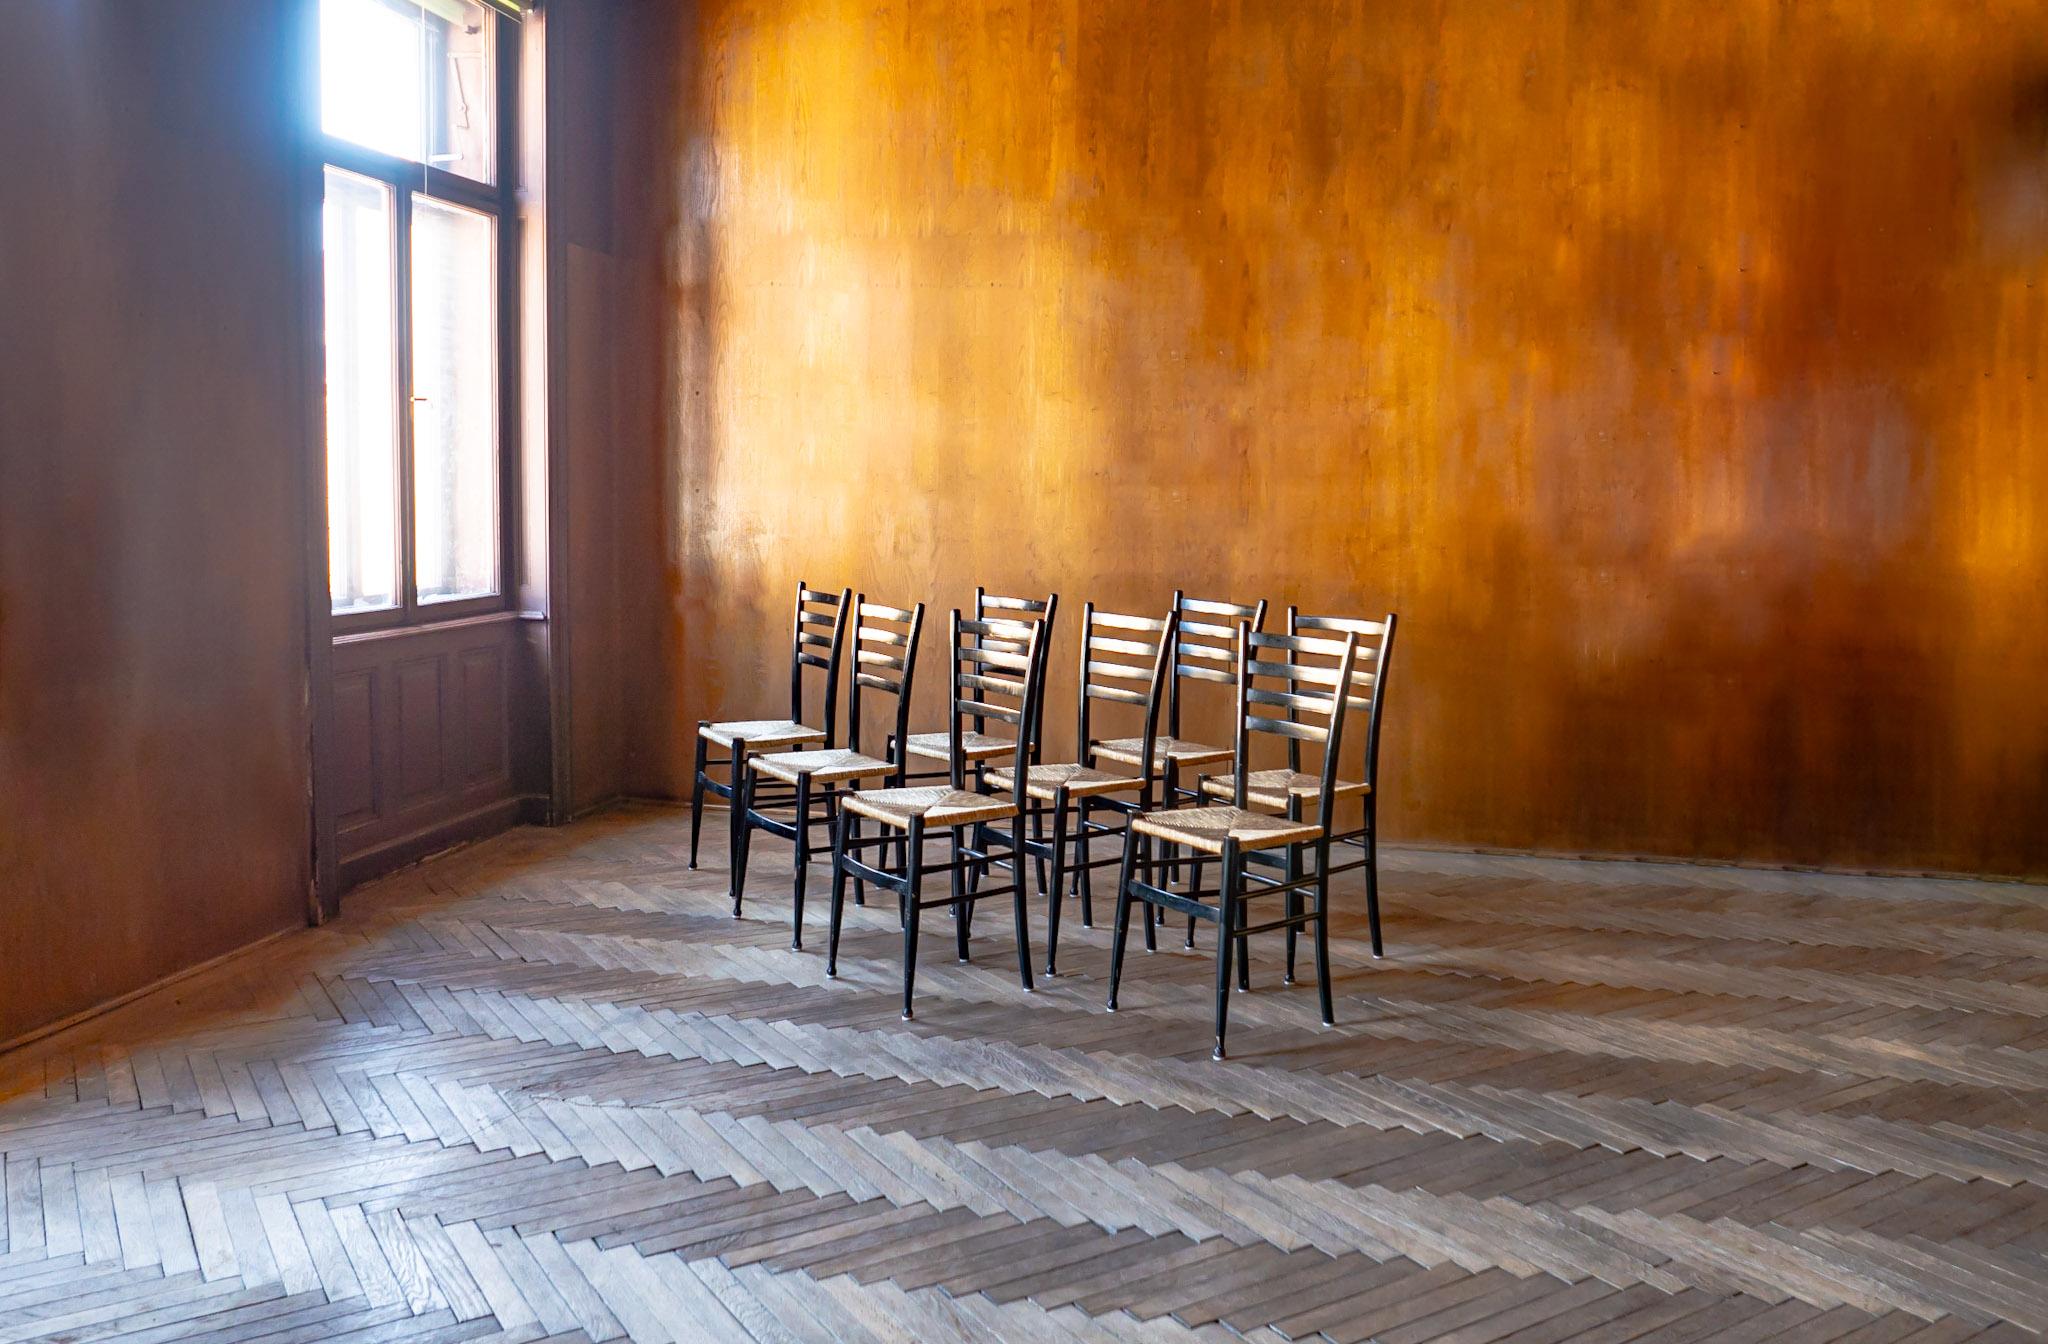 Mid-Century Modern schwarze Bast-Chiavari-Esszimmerstühle, Italien 1960er Jahre.

Dieser Satz von 8 Esszimmerstühlen aus Holz wurde von der italienischen Möbelfirma Chiavari in den 1960er Jahren entworfen und hergestellt. Jeder Stuhl besteht aus